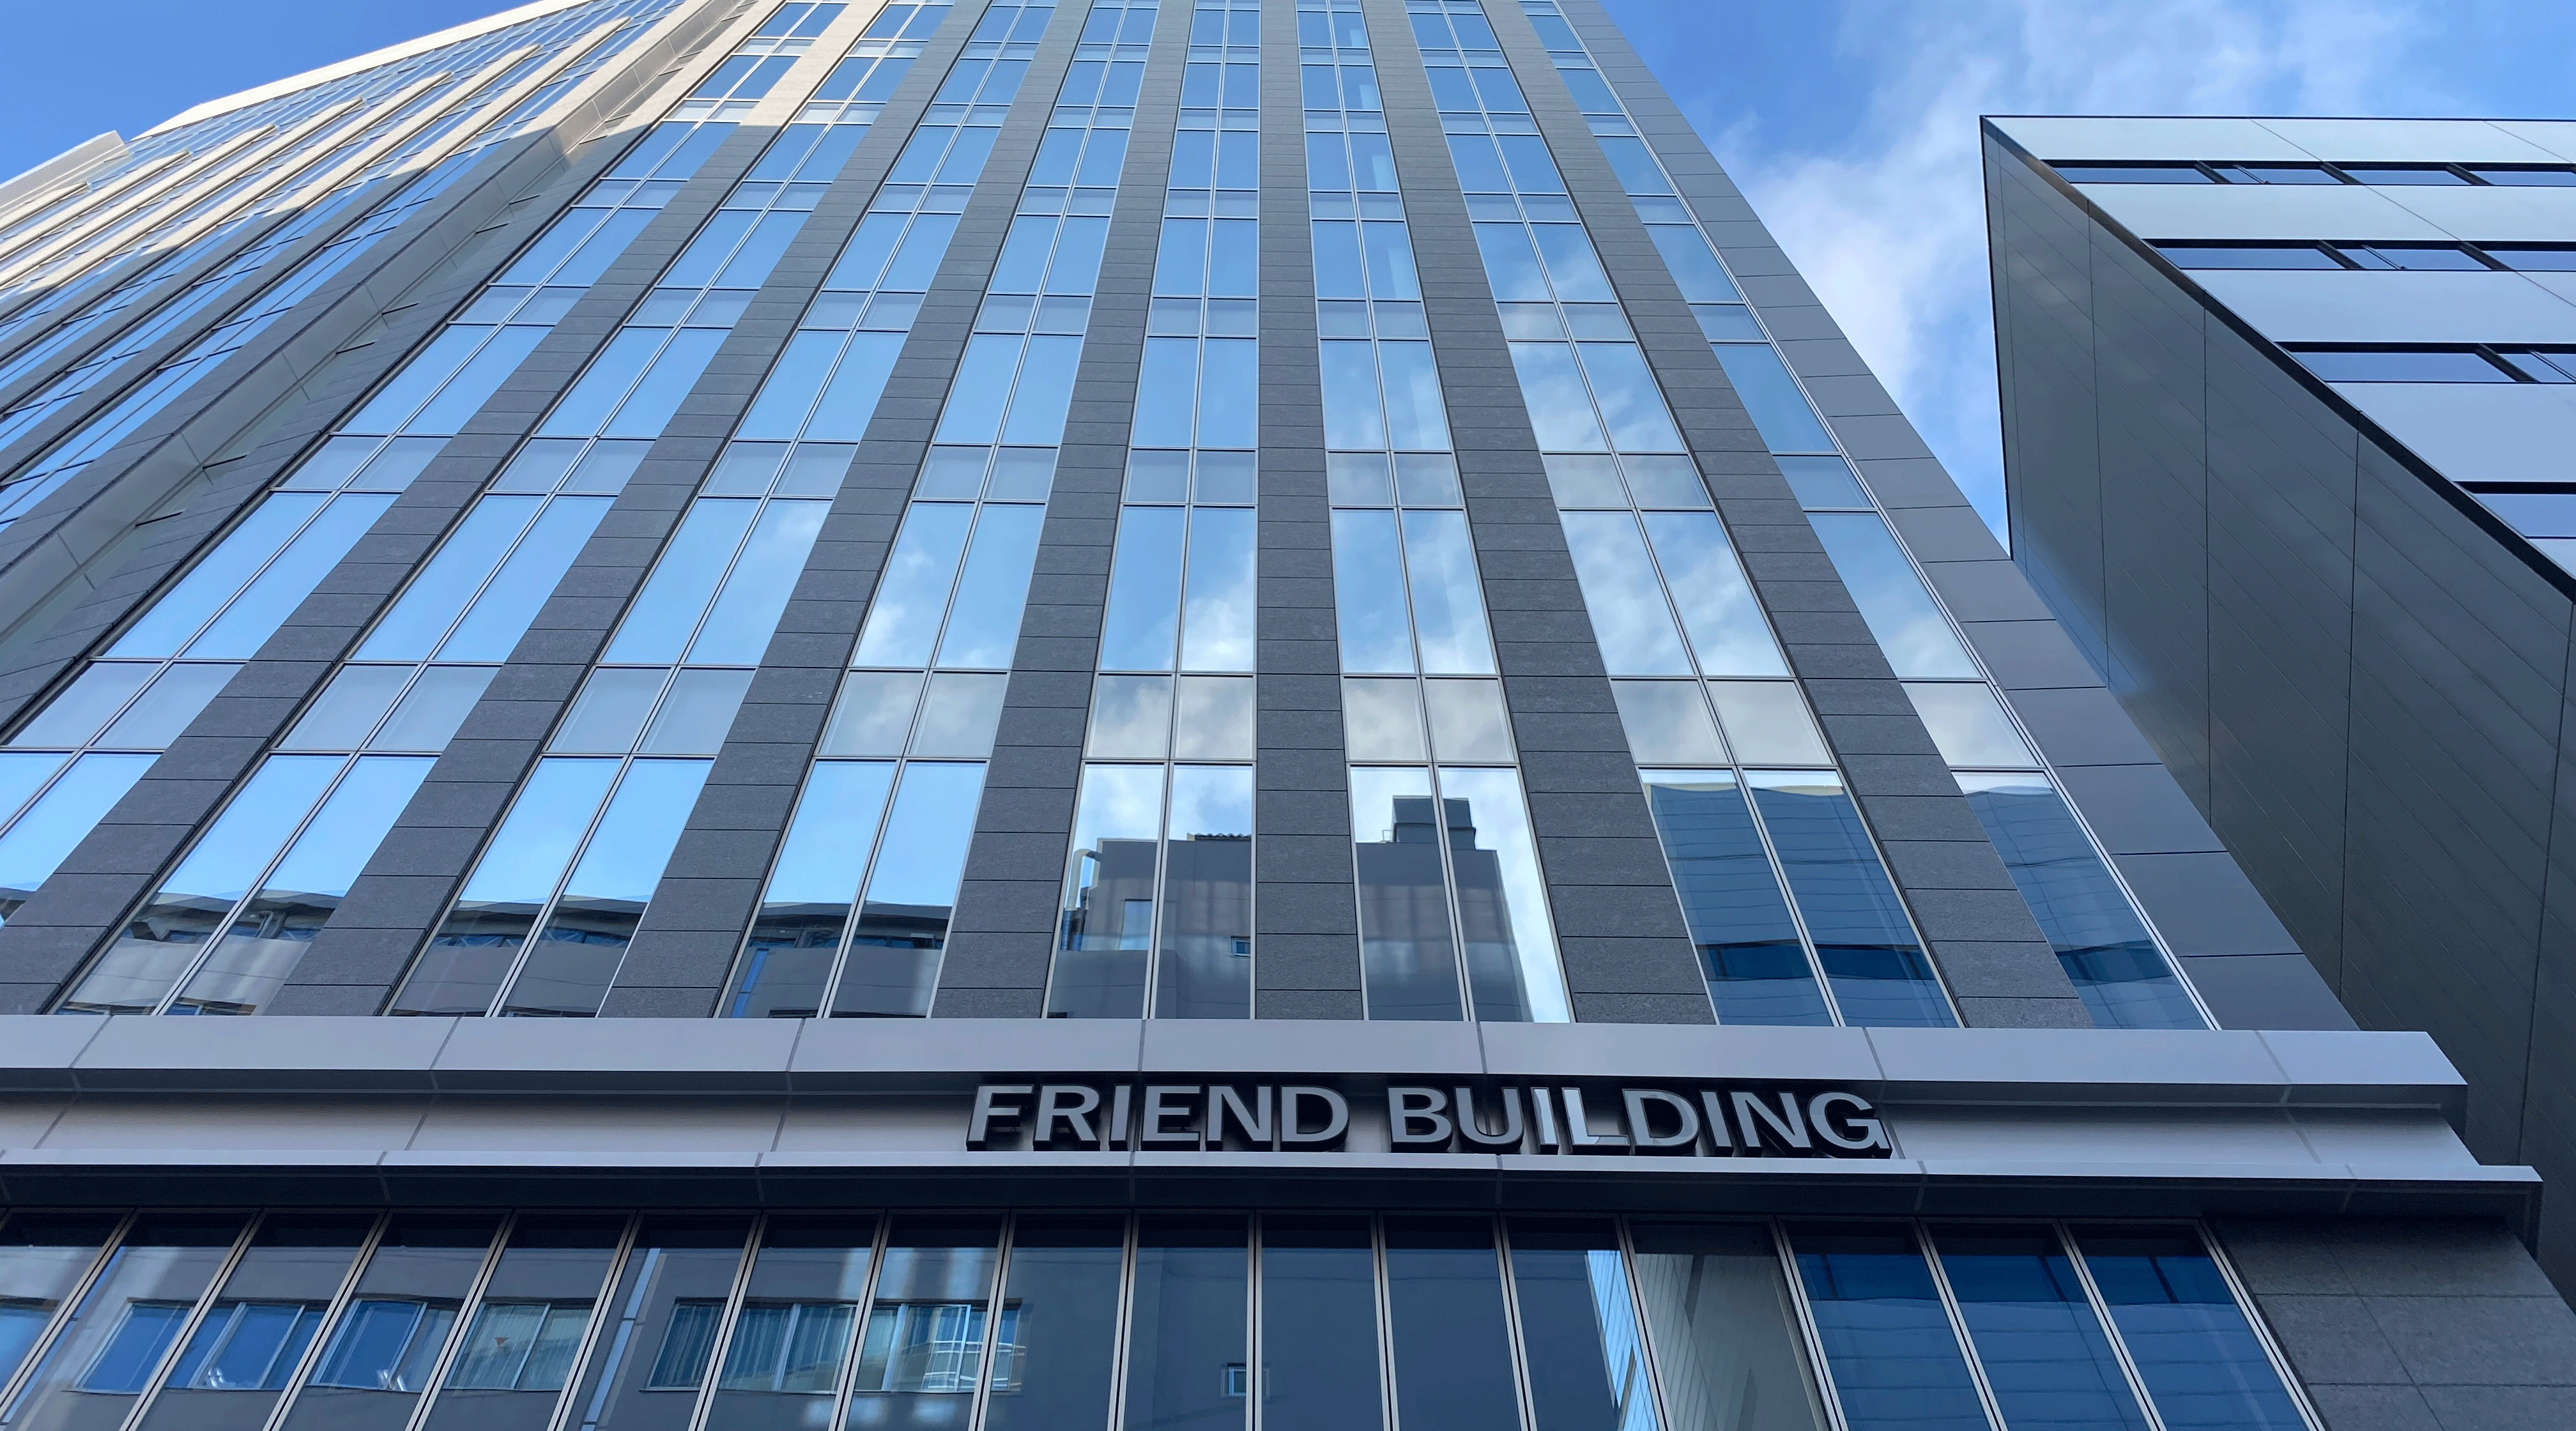 FRIEND BUILDING